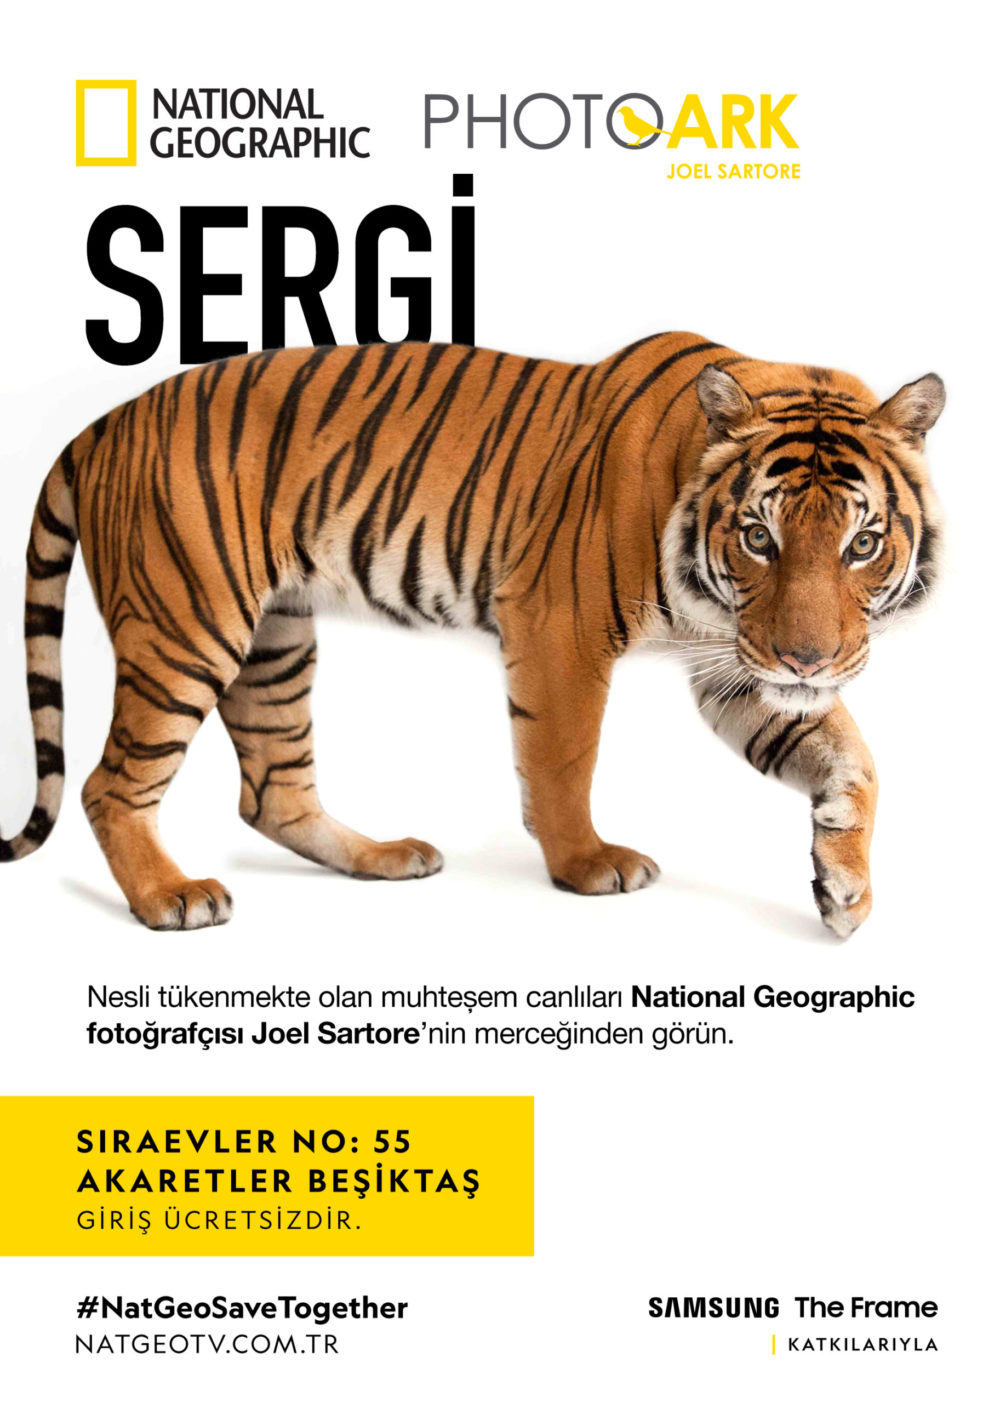 National Geographic Sergisi Photo Ark şimdi Türkiye'de! Fotoğraf Haber